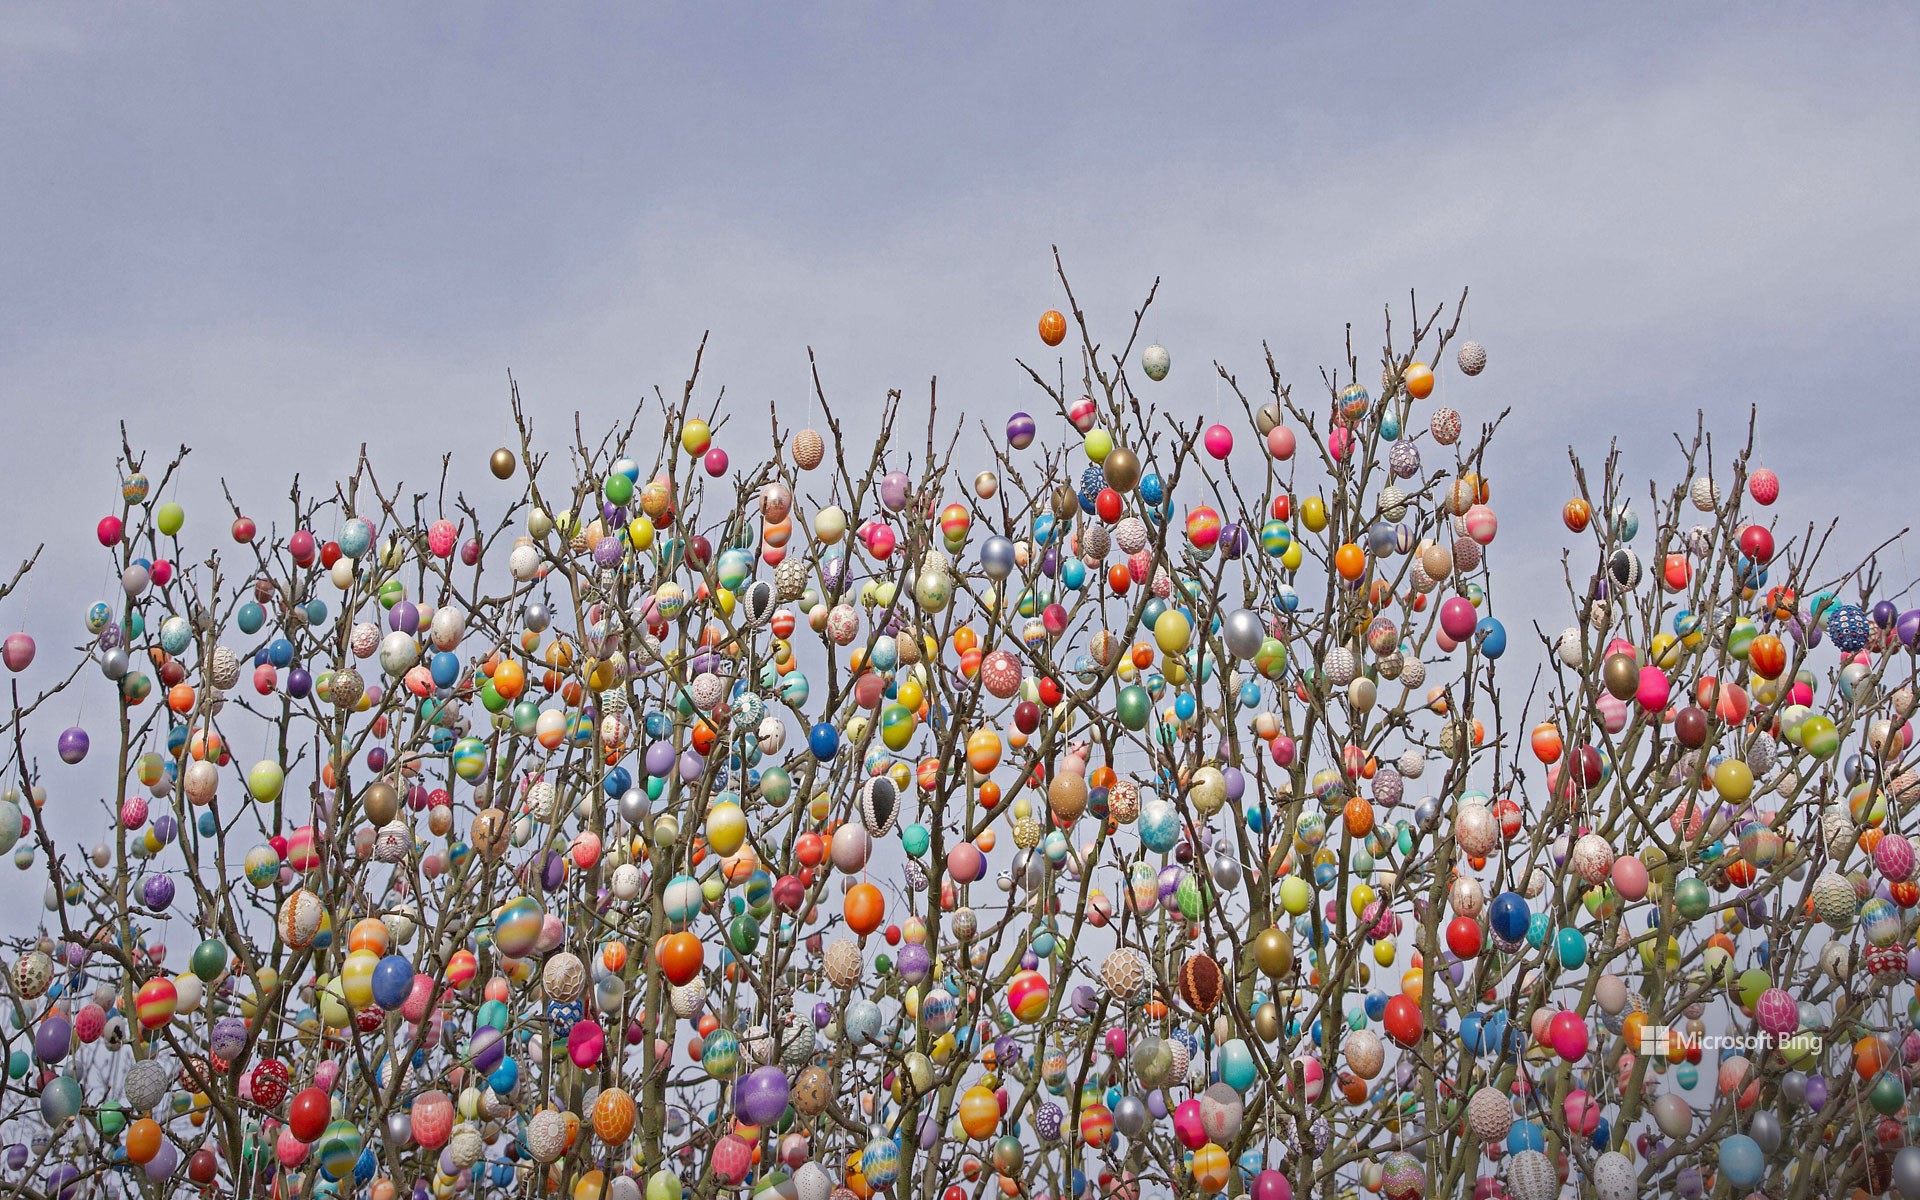 Ostereierbaum (Easter egg tree) in Saalfeld, Germany